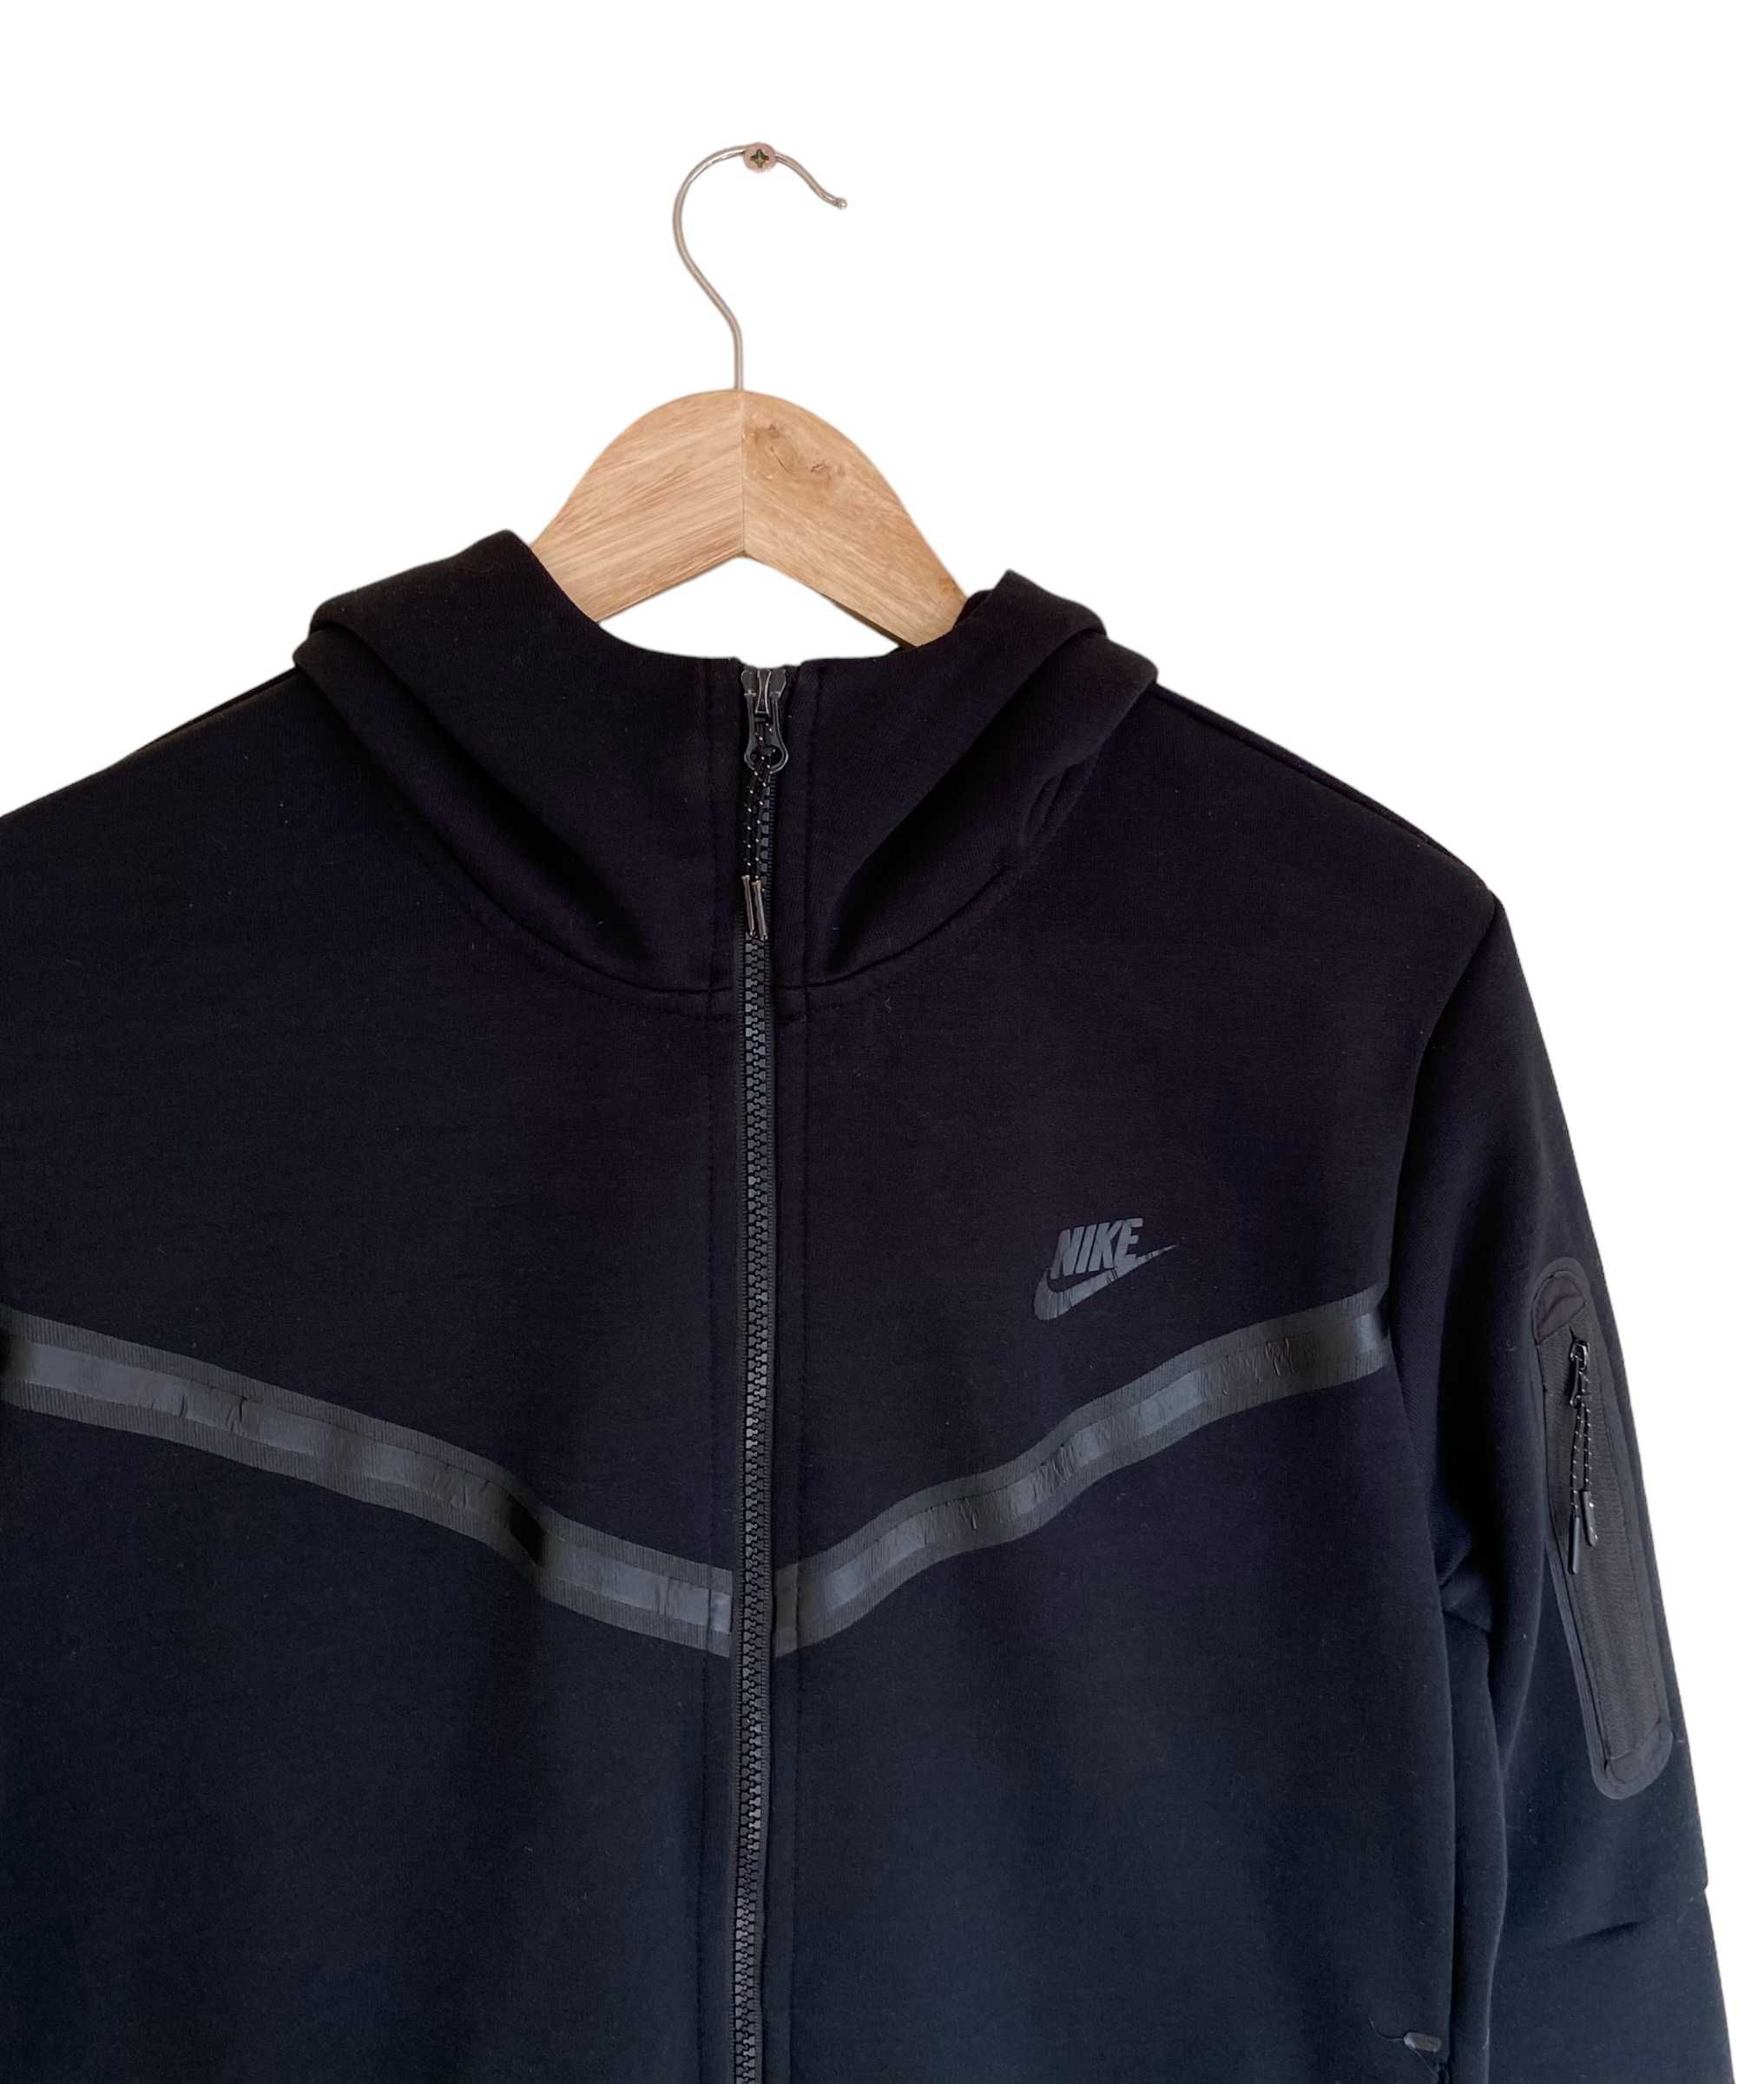 Nike tech fleece czarna bluza, rozmiar L, stan dobry